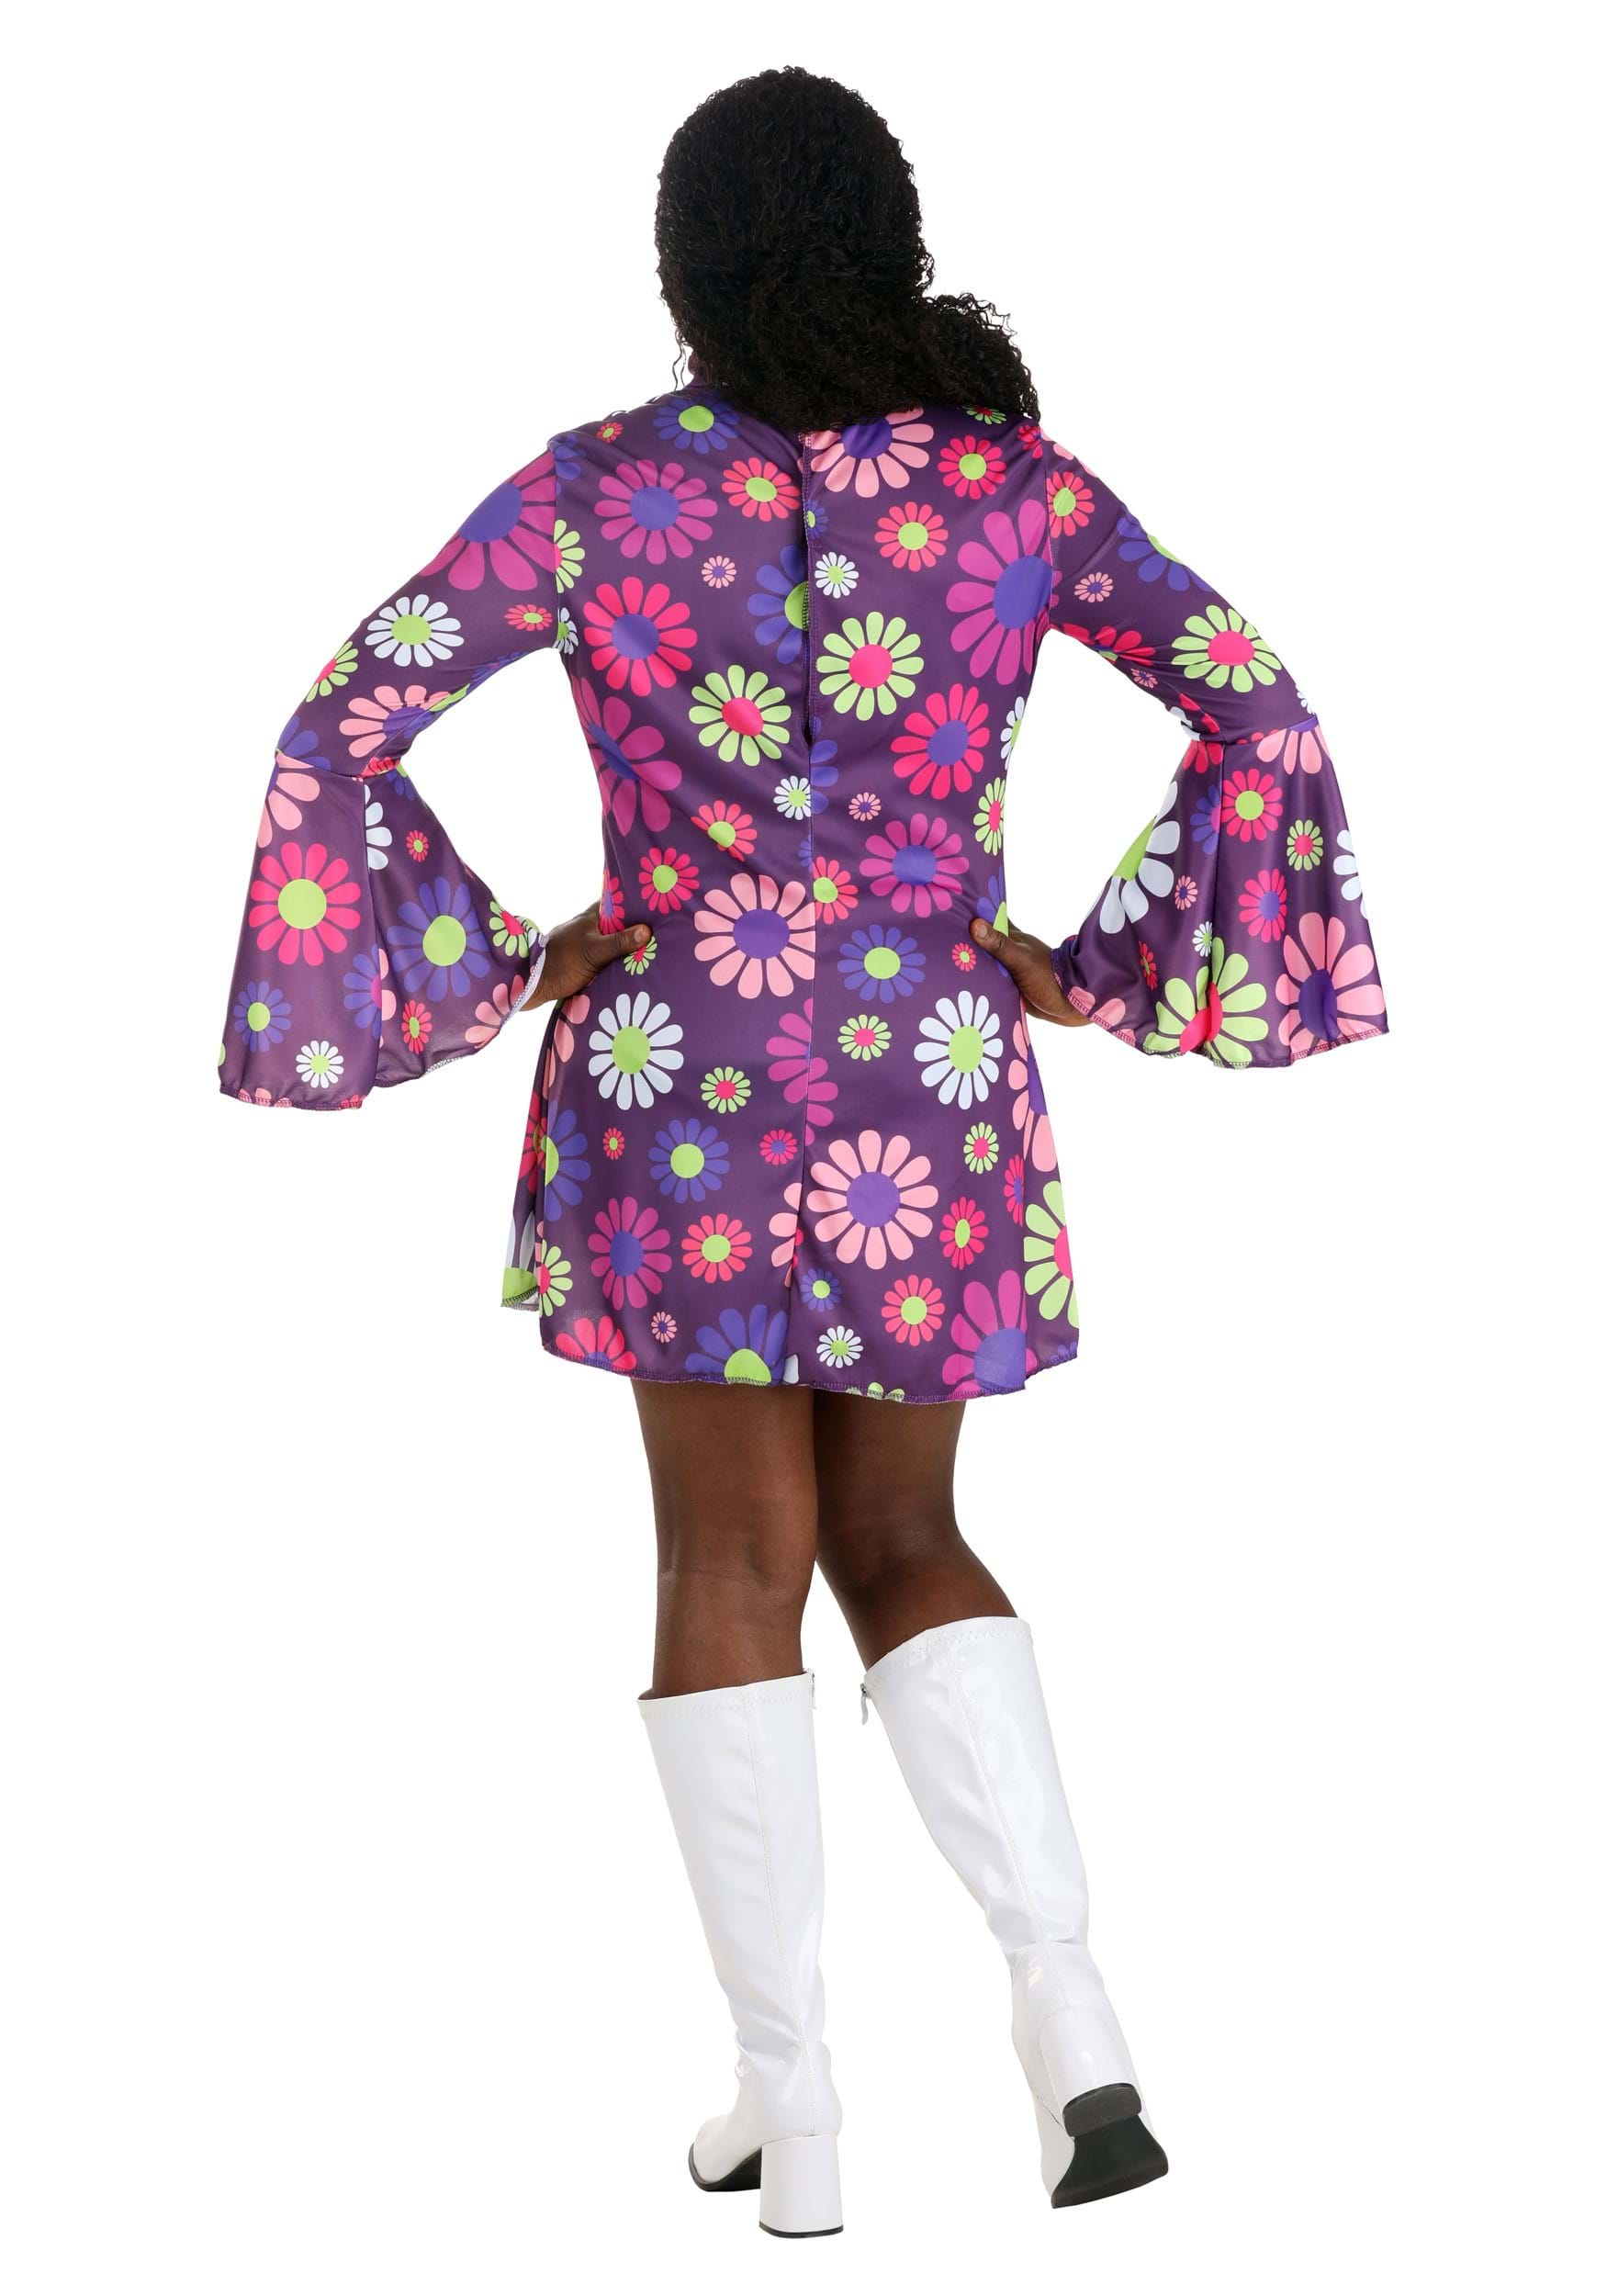 Adult Groovy Flower Power Women's Fancy Dress Costume